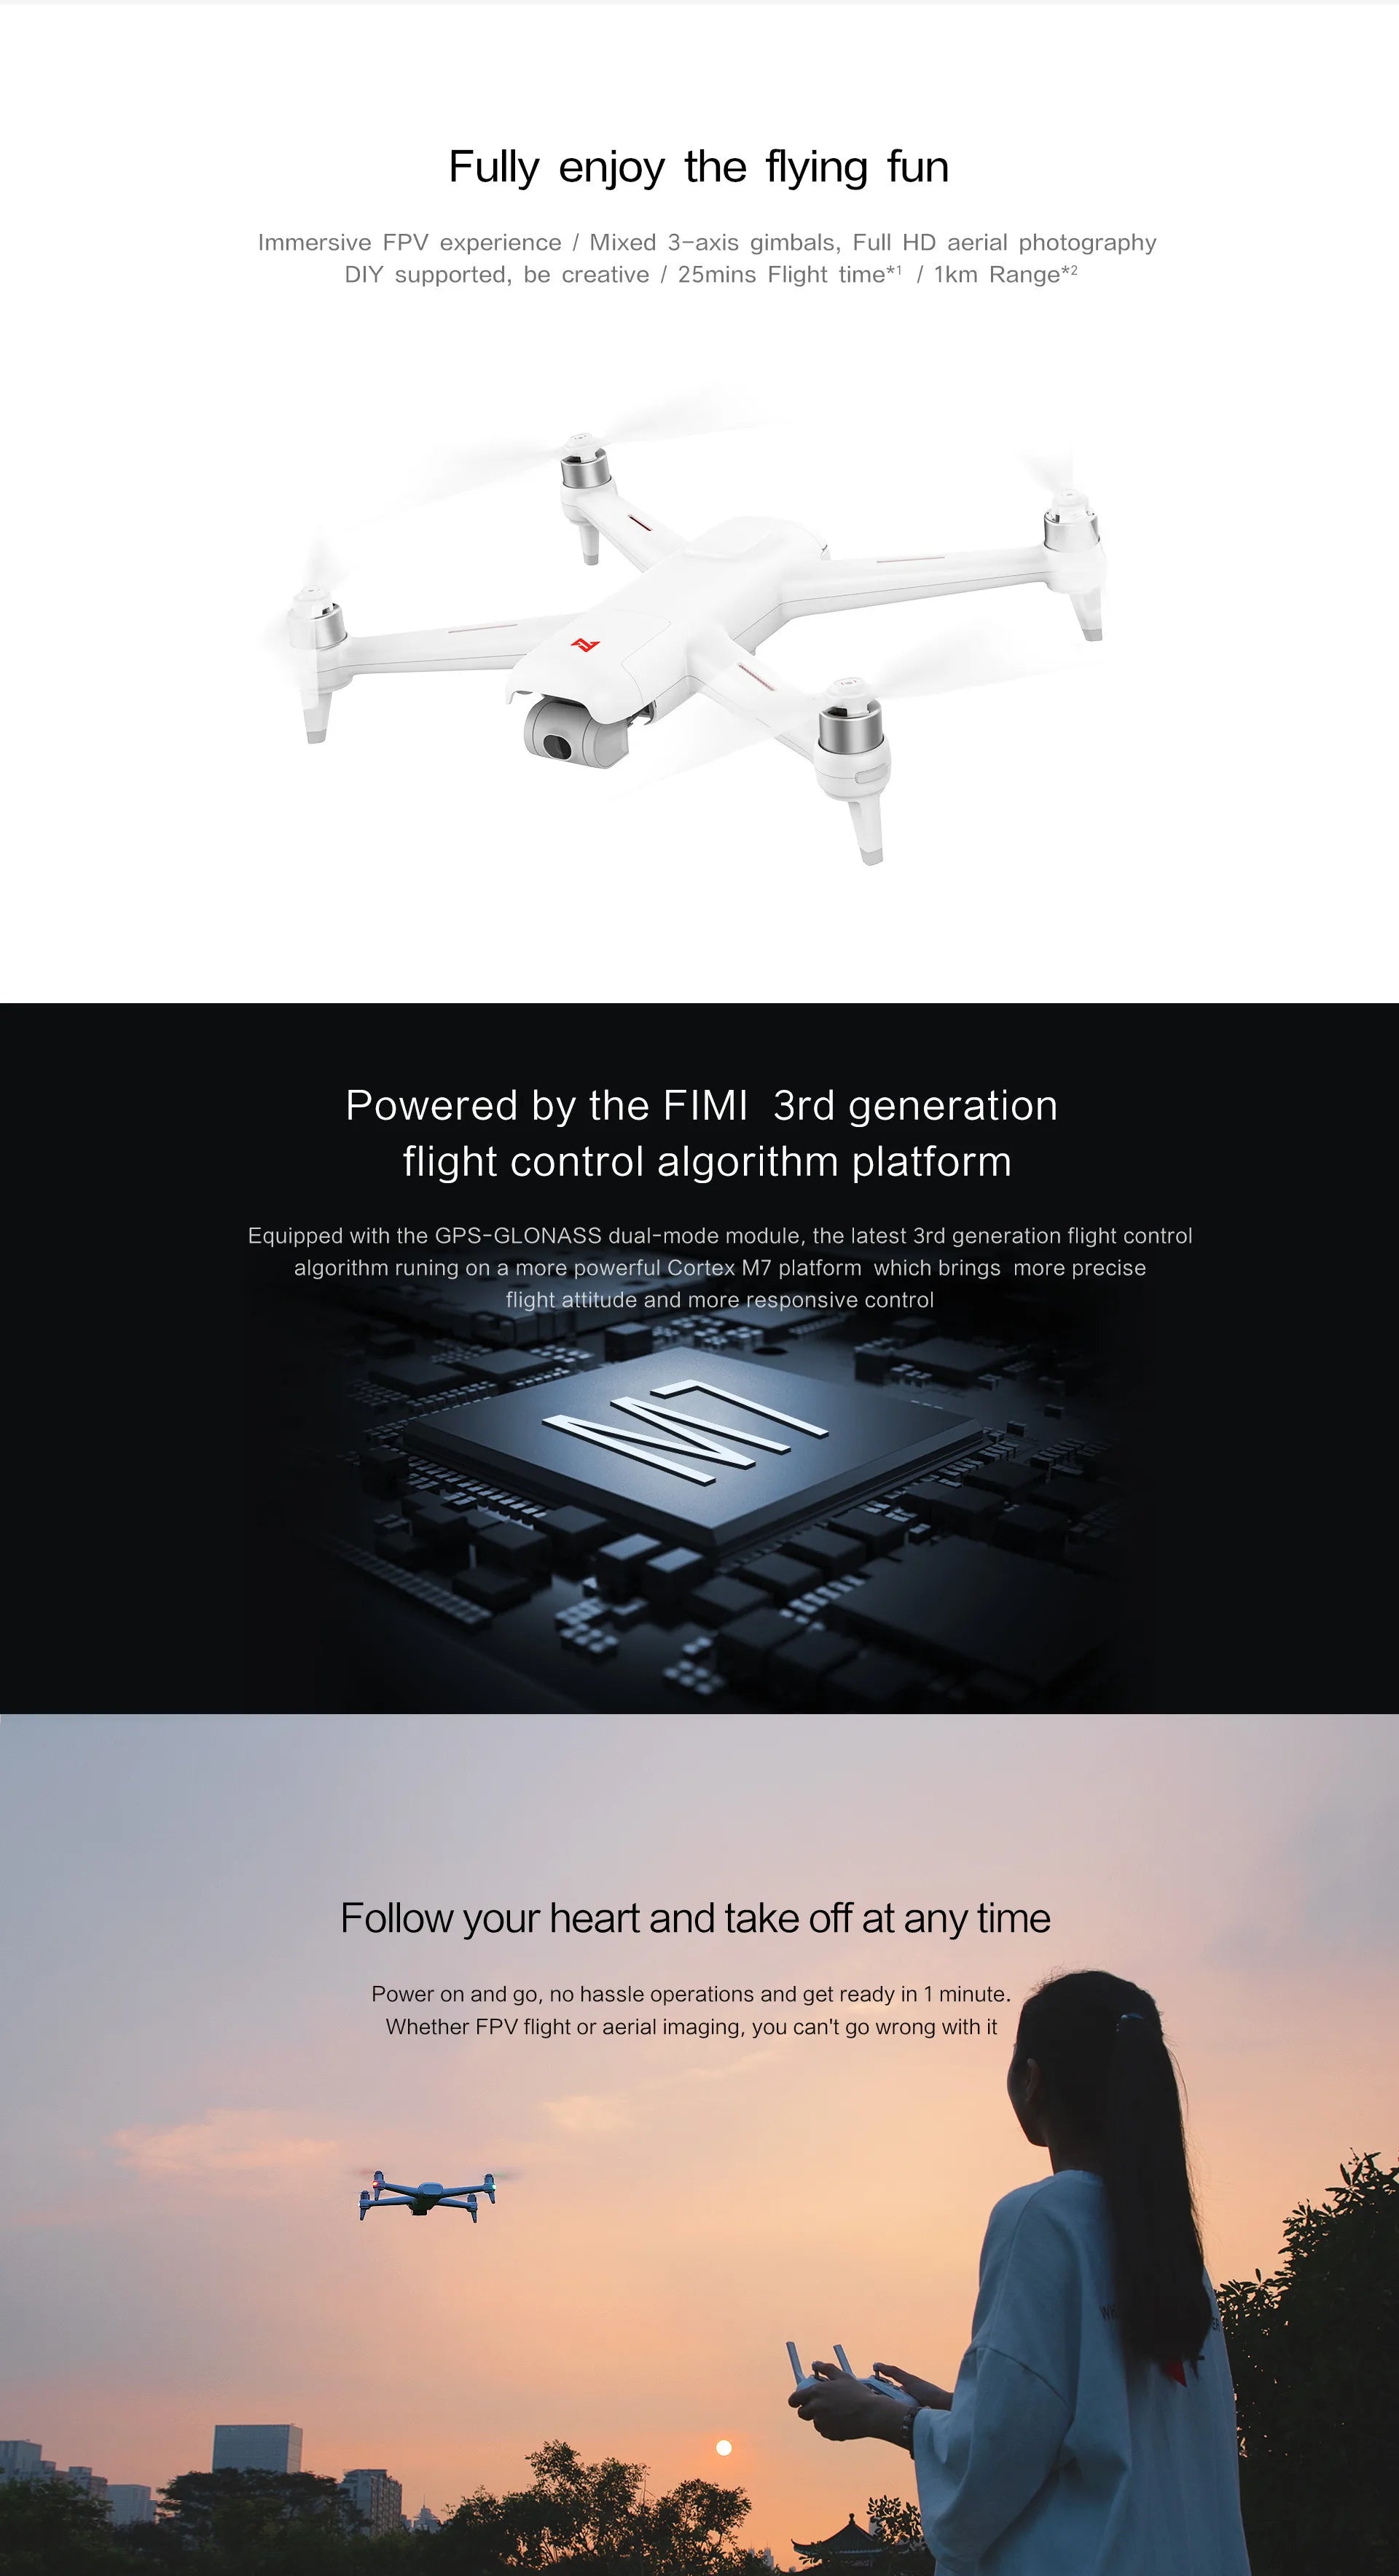 Xiaomi FIMI A3 Drone, FIMI 3rd generation flight control algorithm brings more precise flight attitude and more responsive control